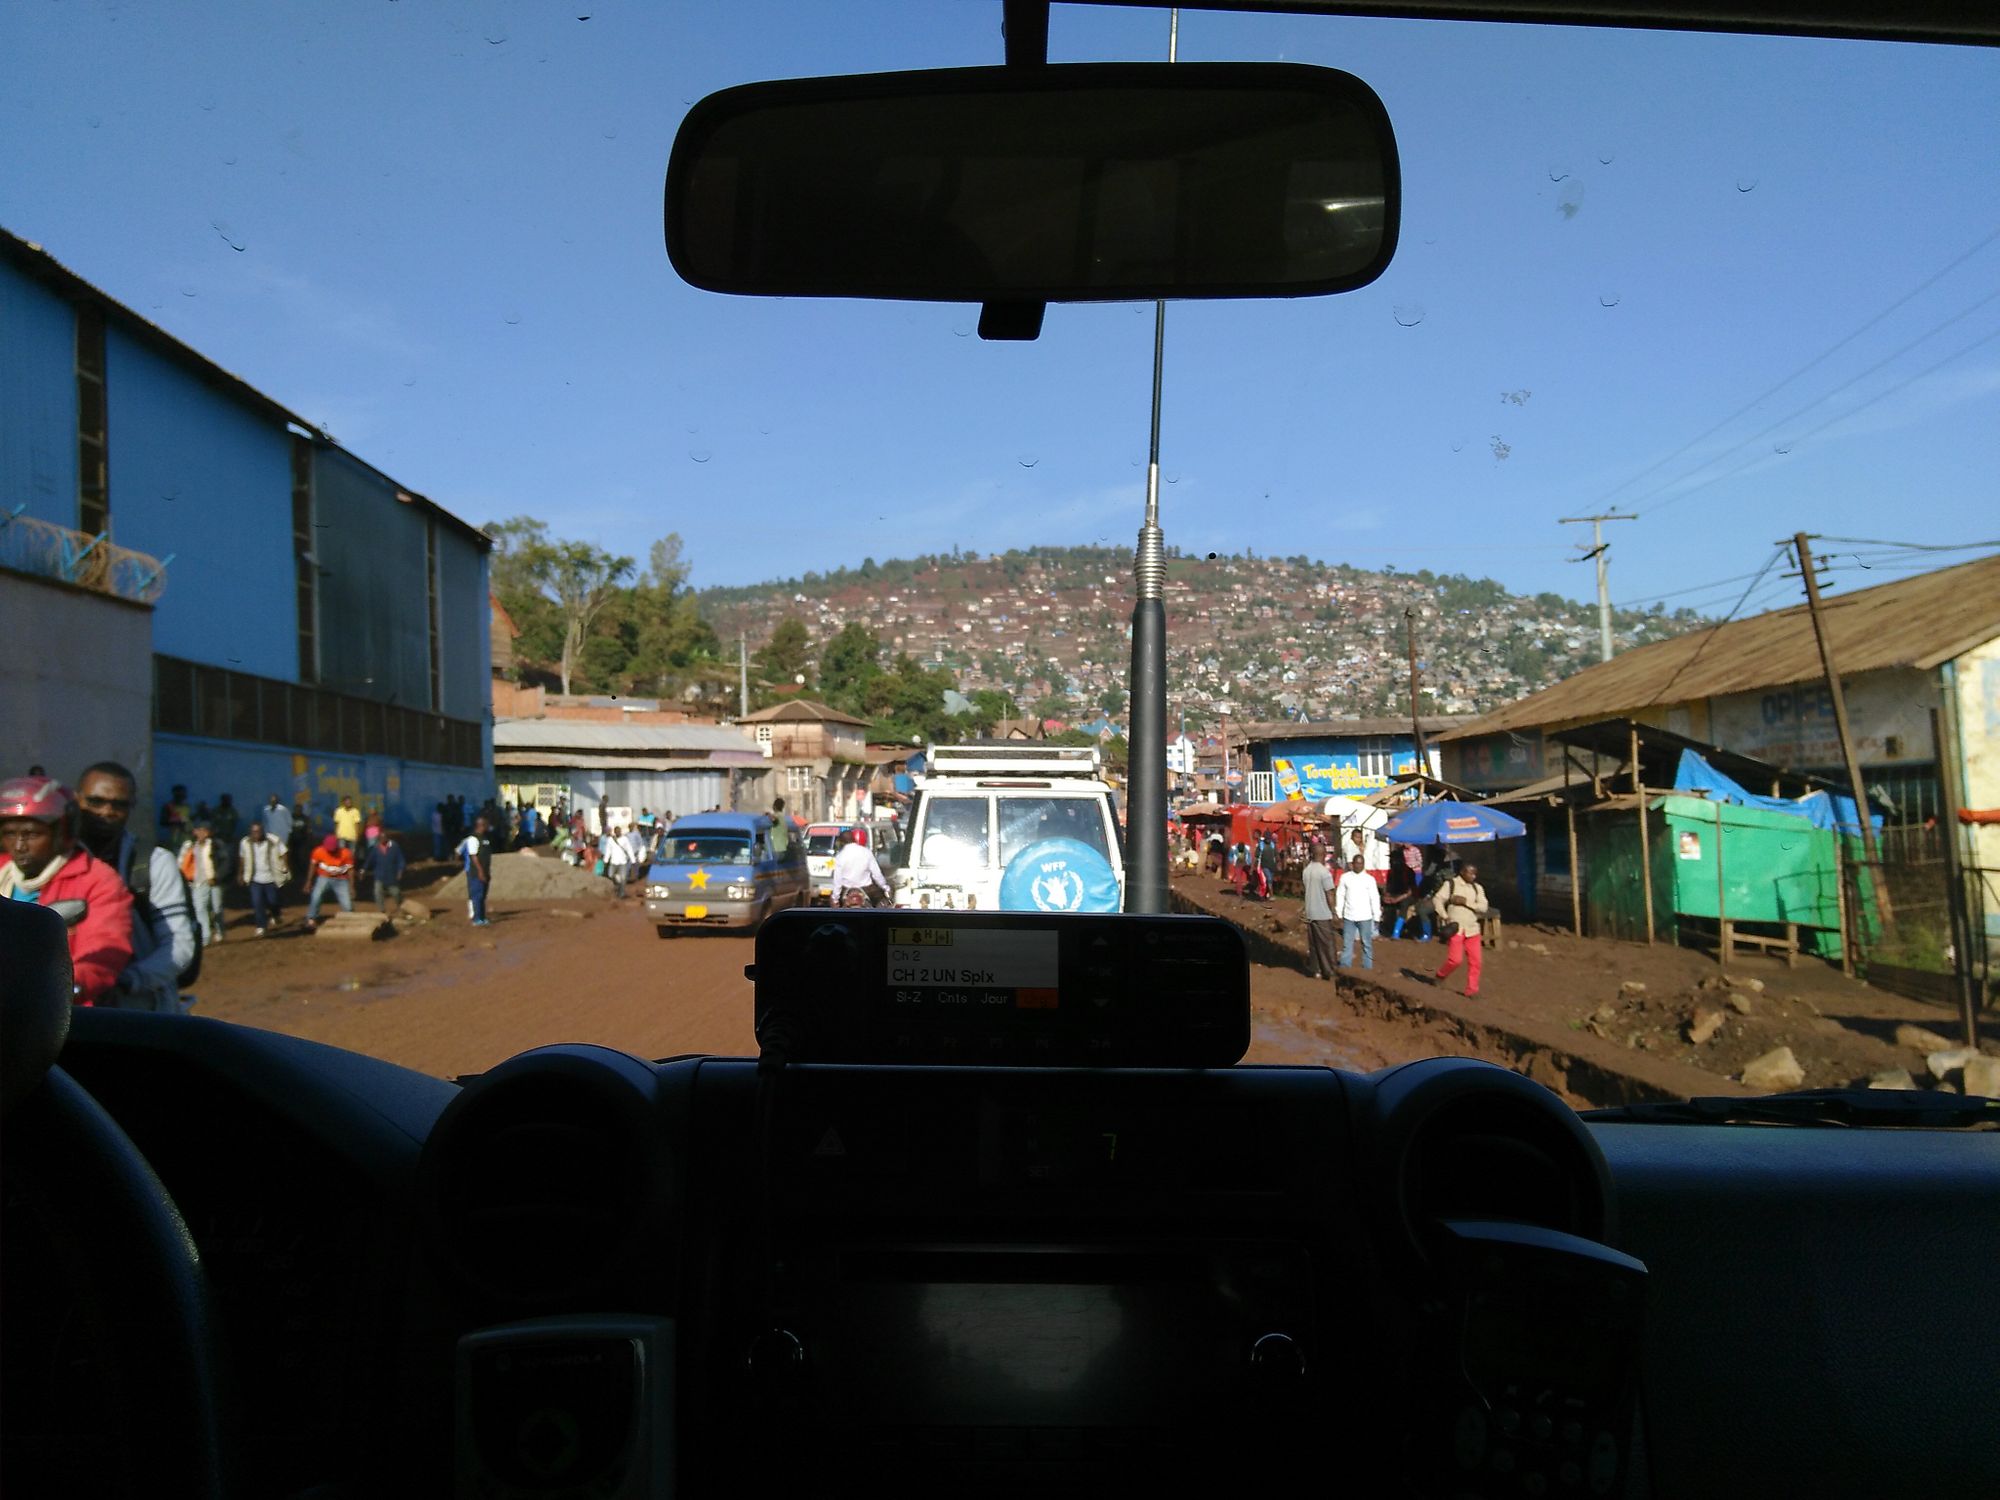 Blick aus dem Inneren eines Fahrzeugs auf einer Straße in Bukavu, Jürgen Kretz, Demokratische Republik Kongo.